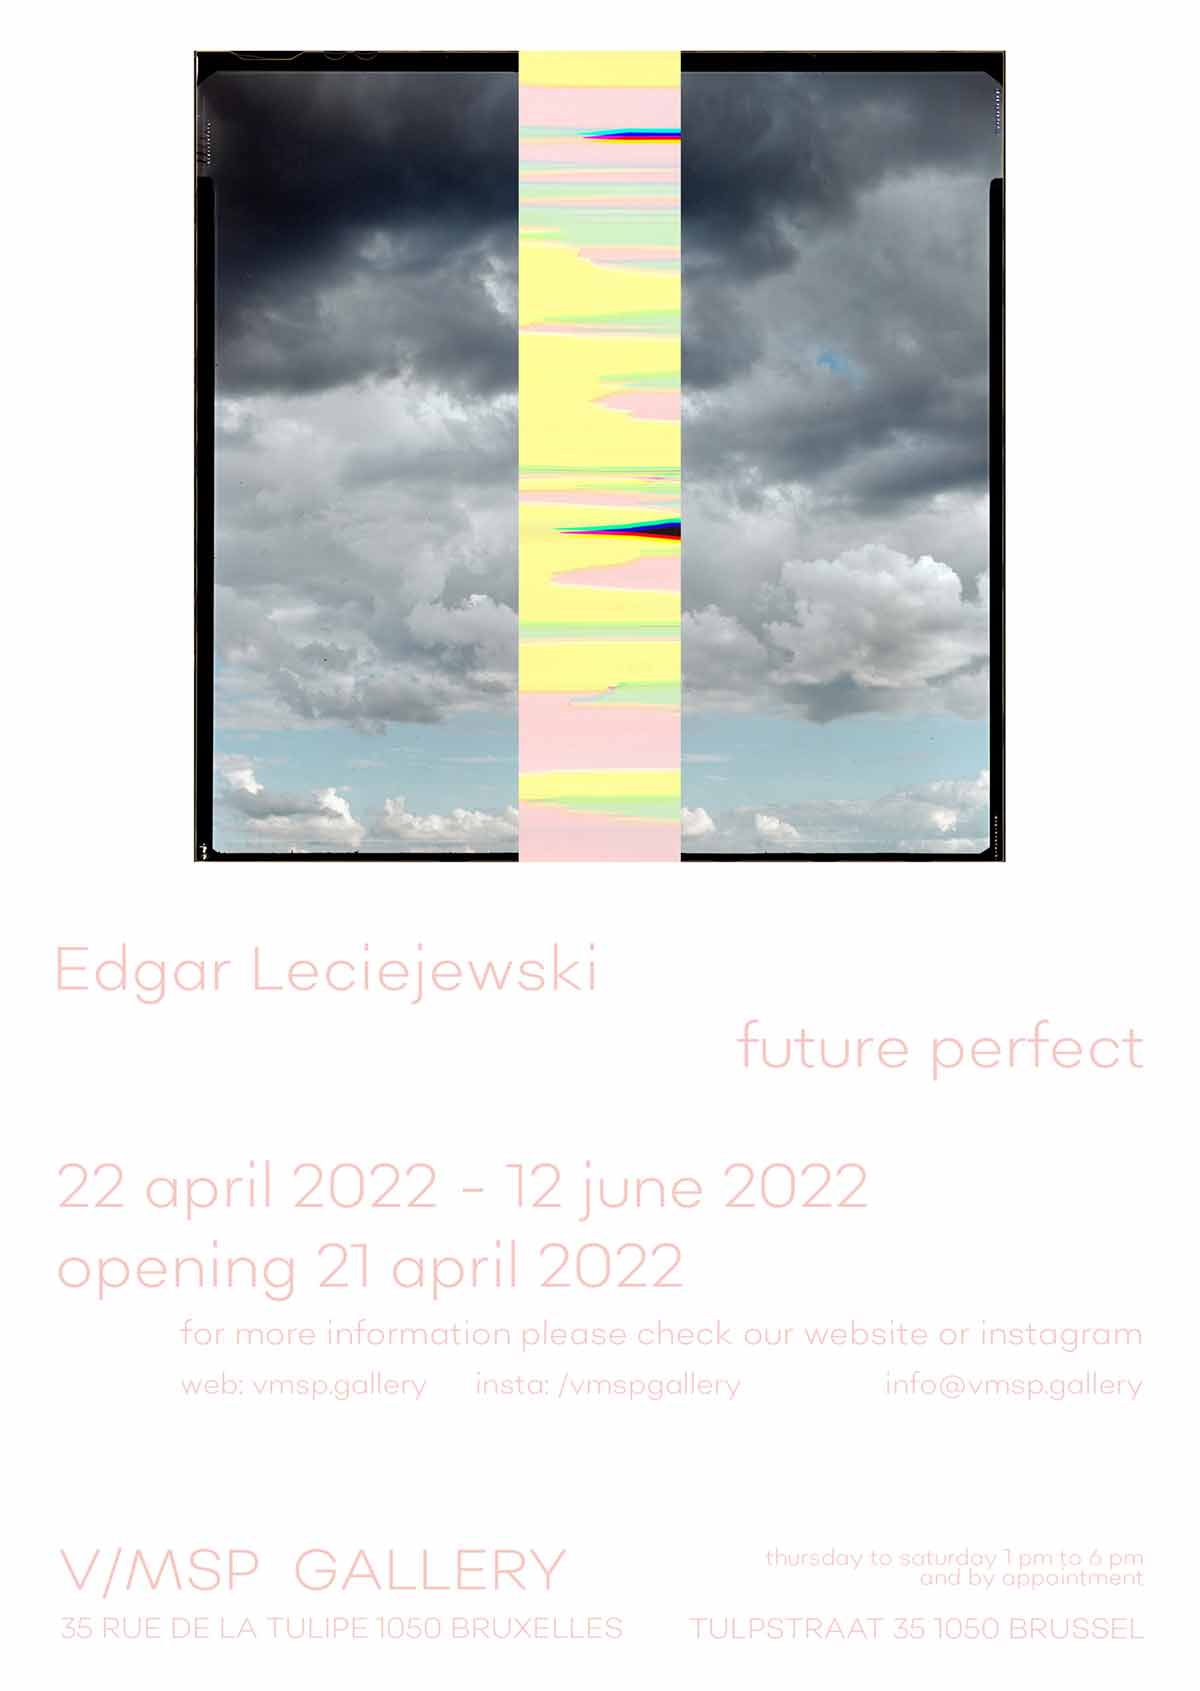 Edgar Leciejewski, future perfect, V/MSP Gallery Brussels